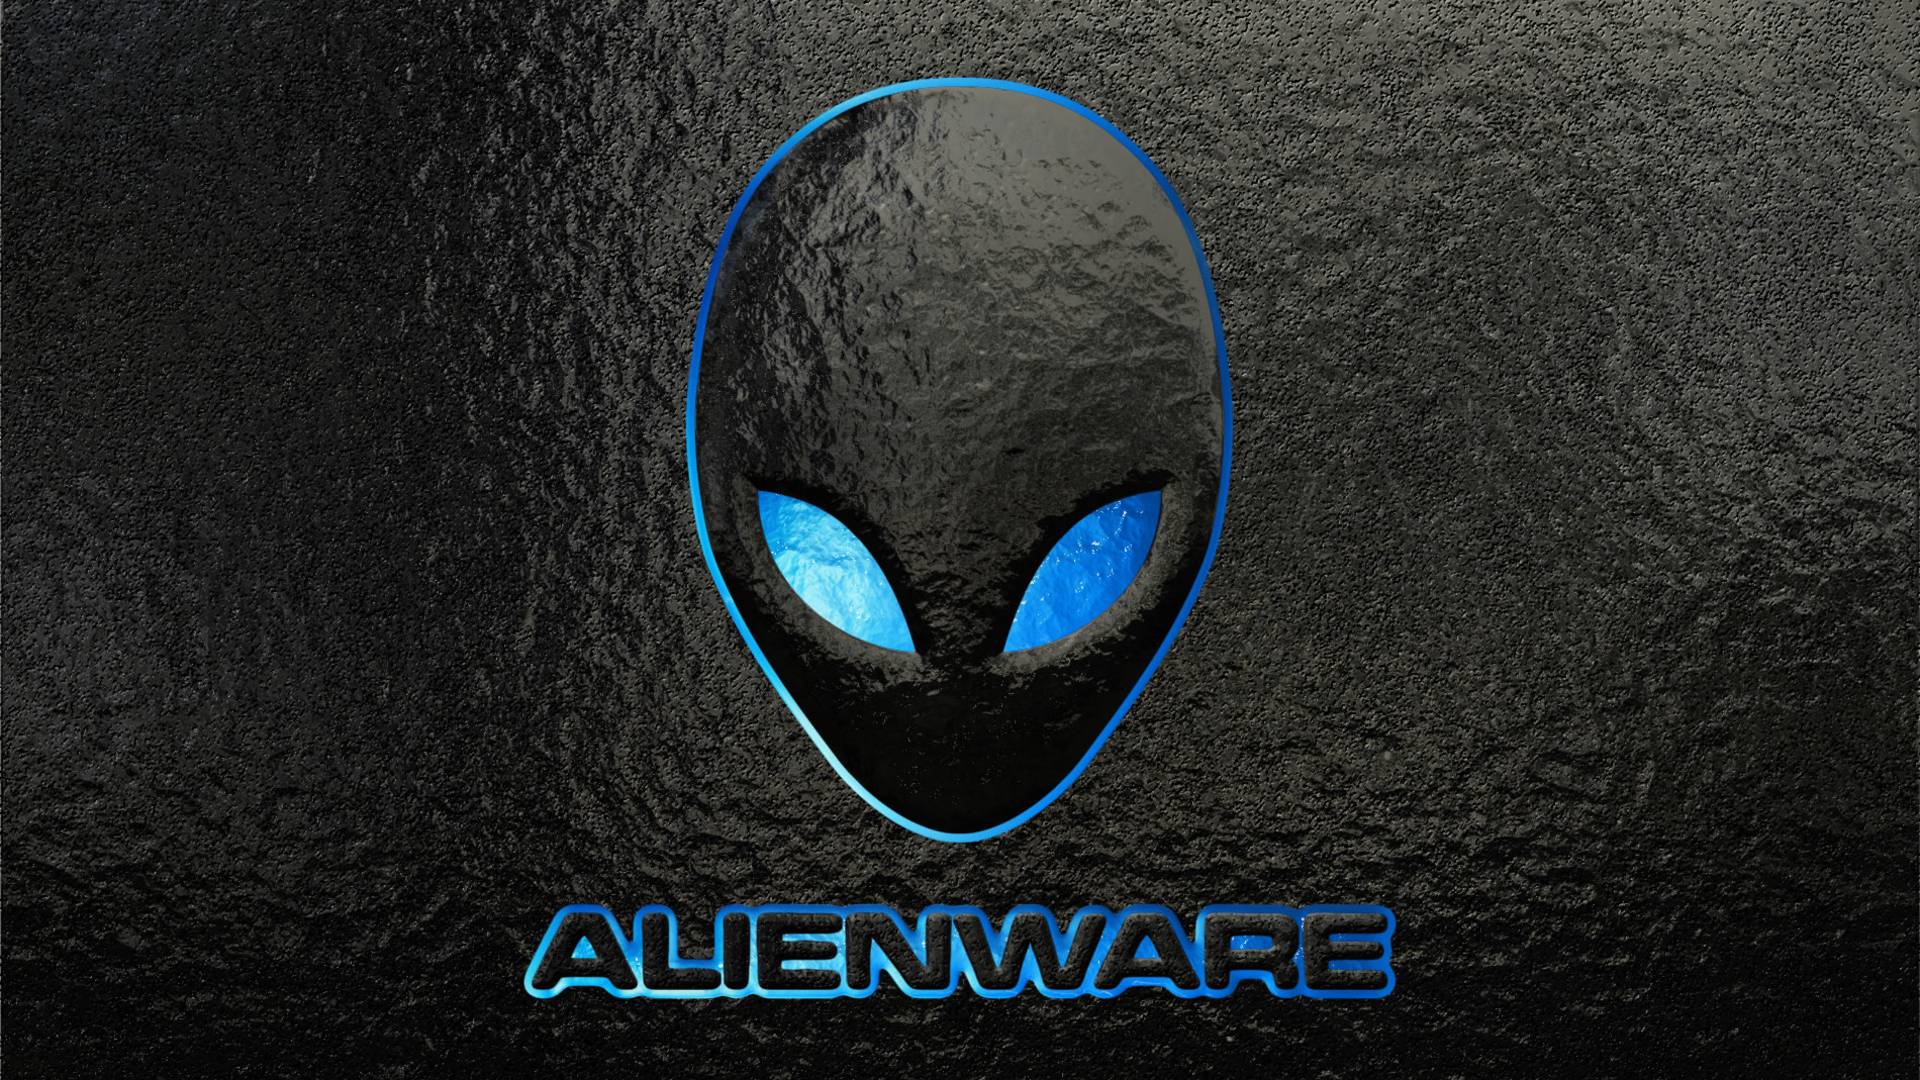 Alienware Laptop Wallpapers Top Free Alienware Laptop Backgrounds Wallpaperaccess